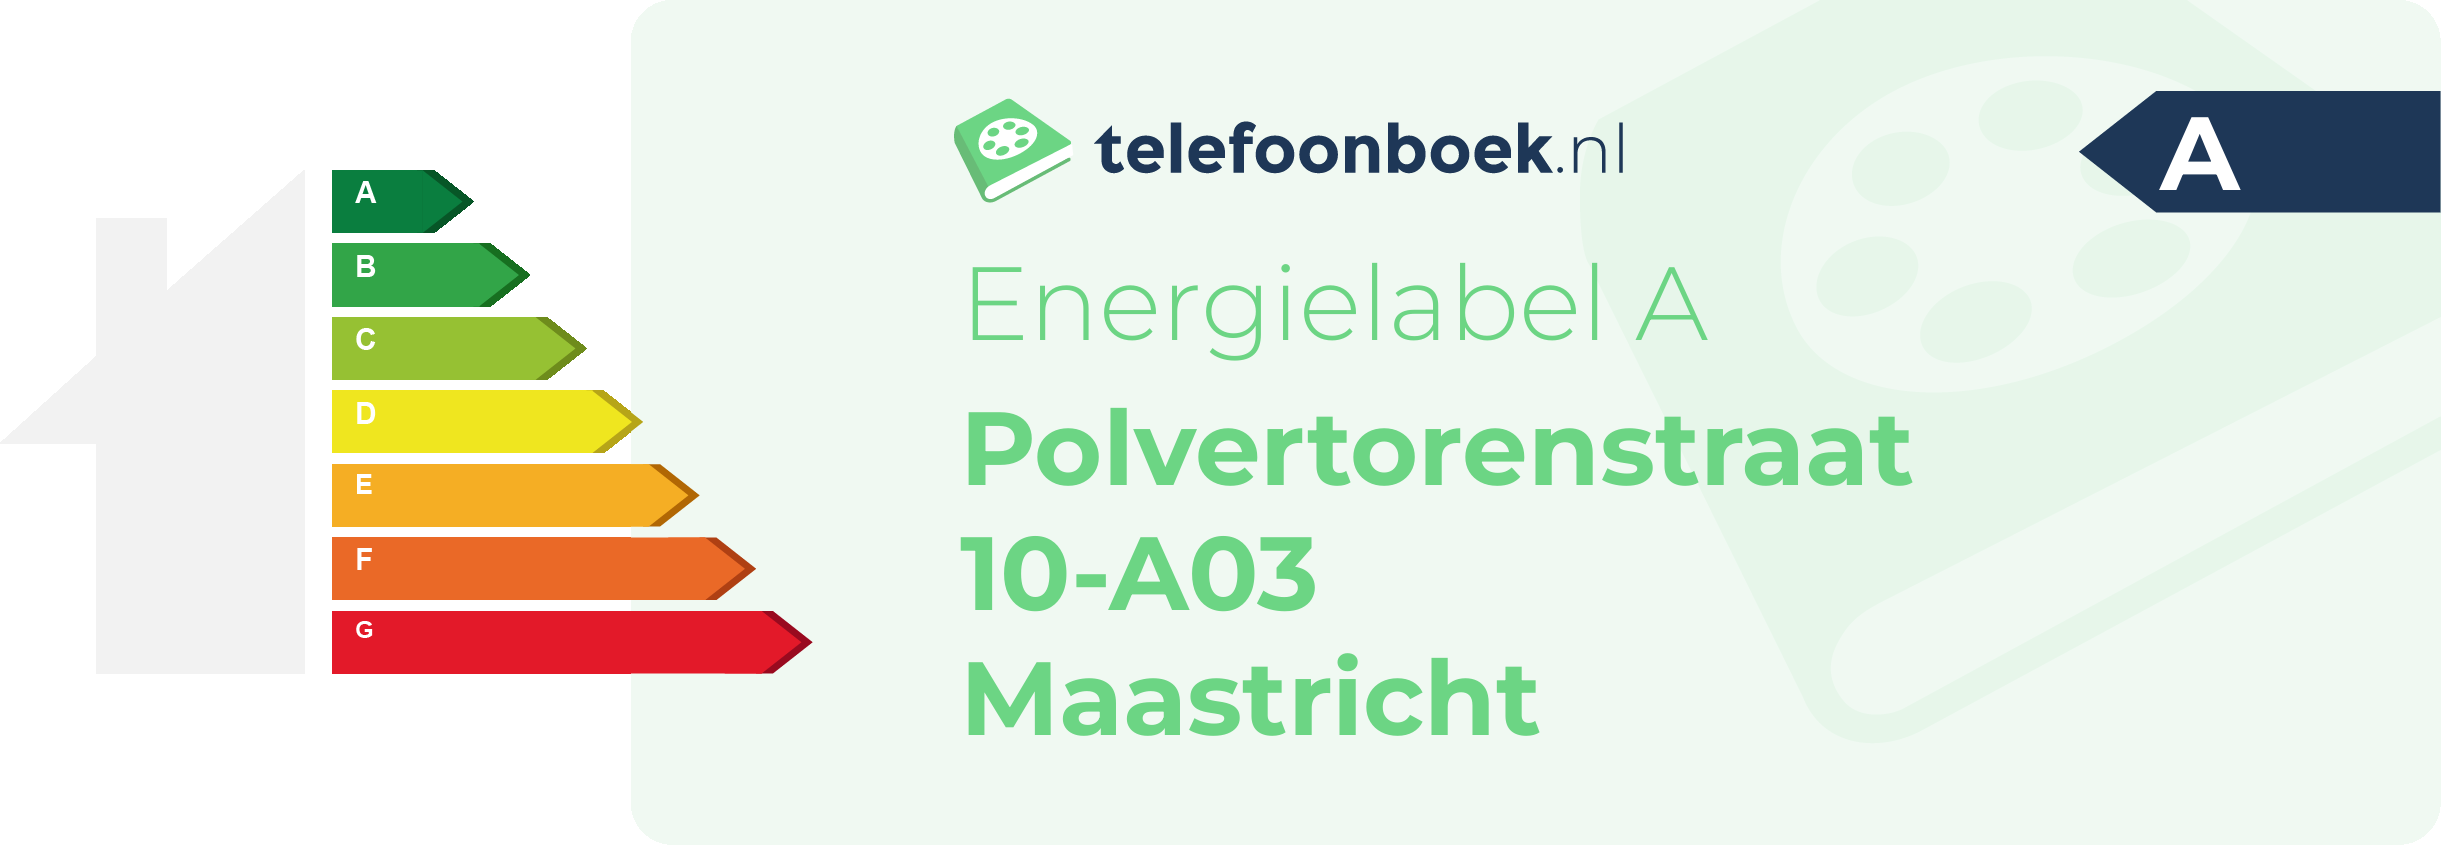 Energielabel Polvertorenstraat 10-A03 Maastricht